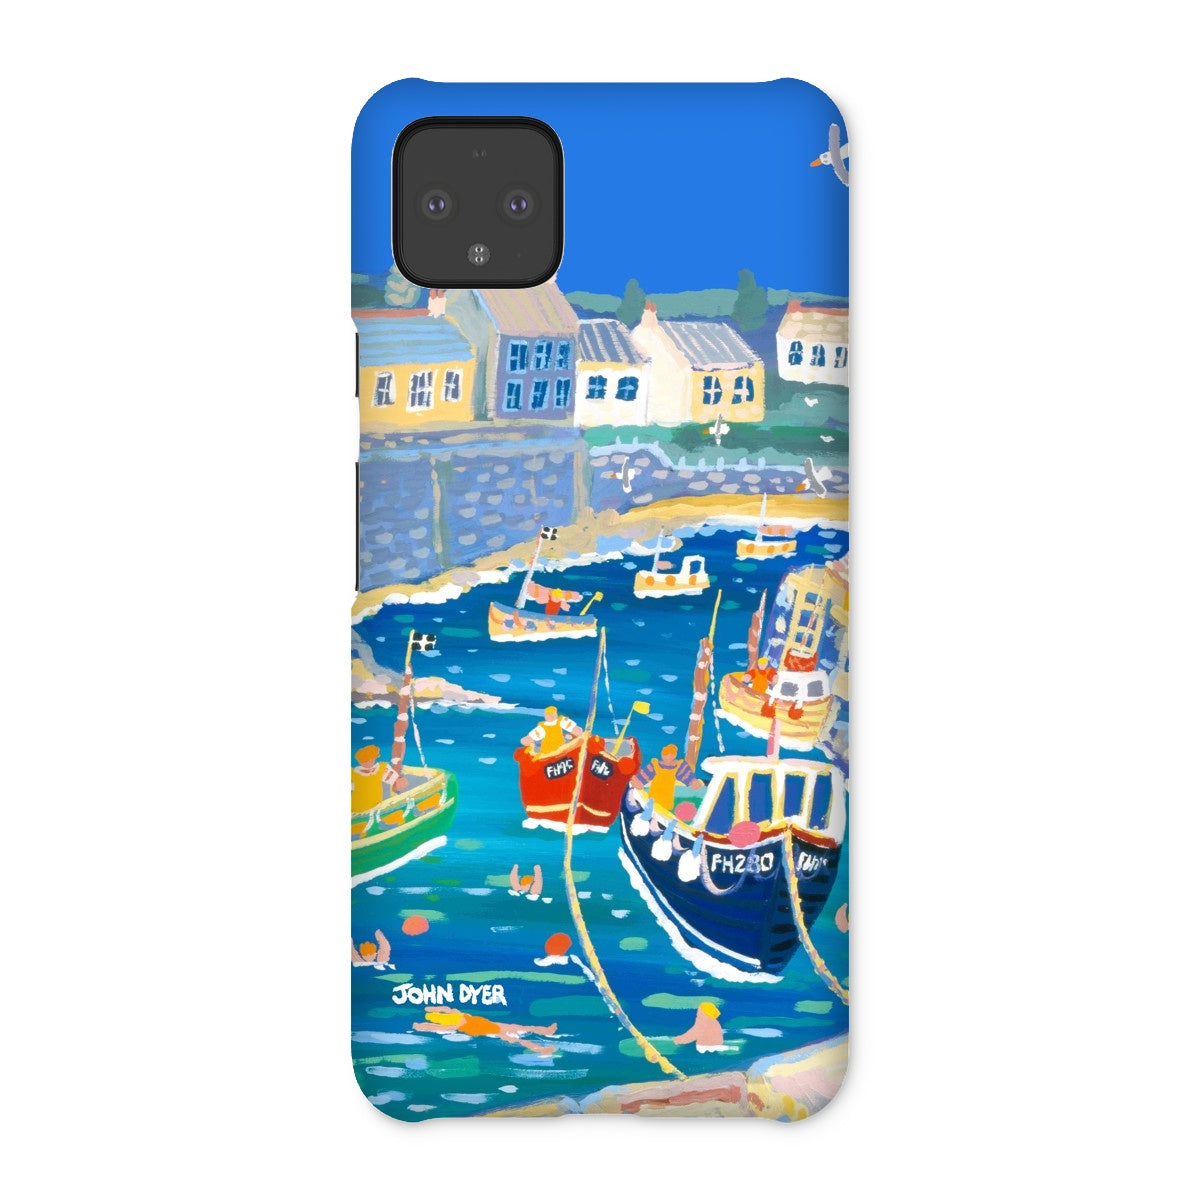 Snap Art Phone Case. Coverack Harbour. Artist John Dyer. Cornwall Art Gallery